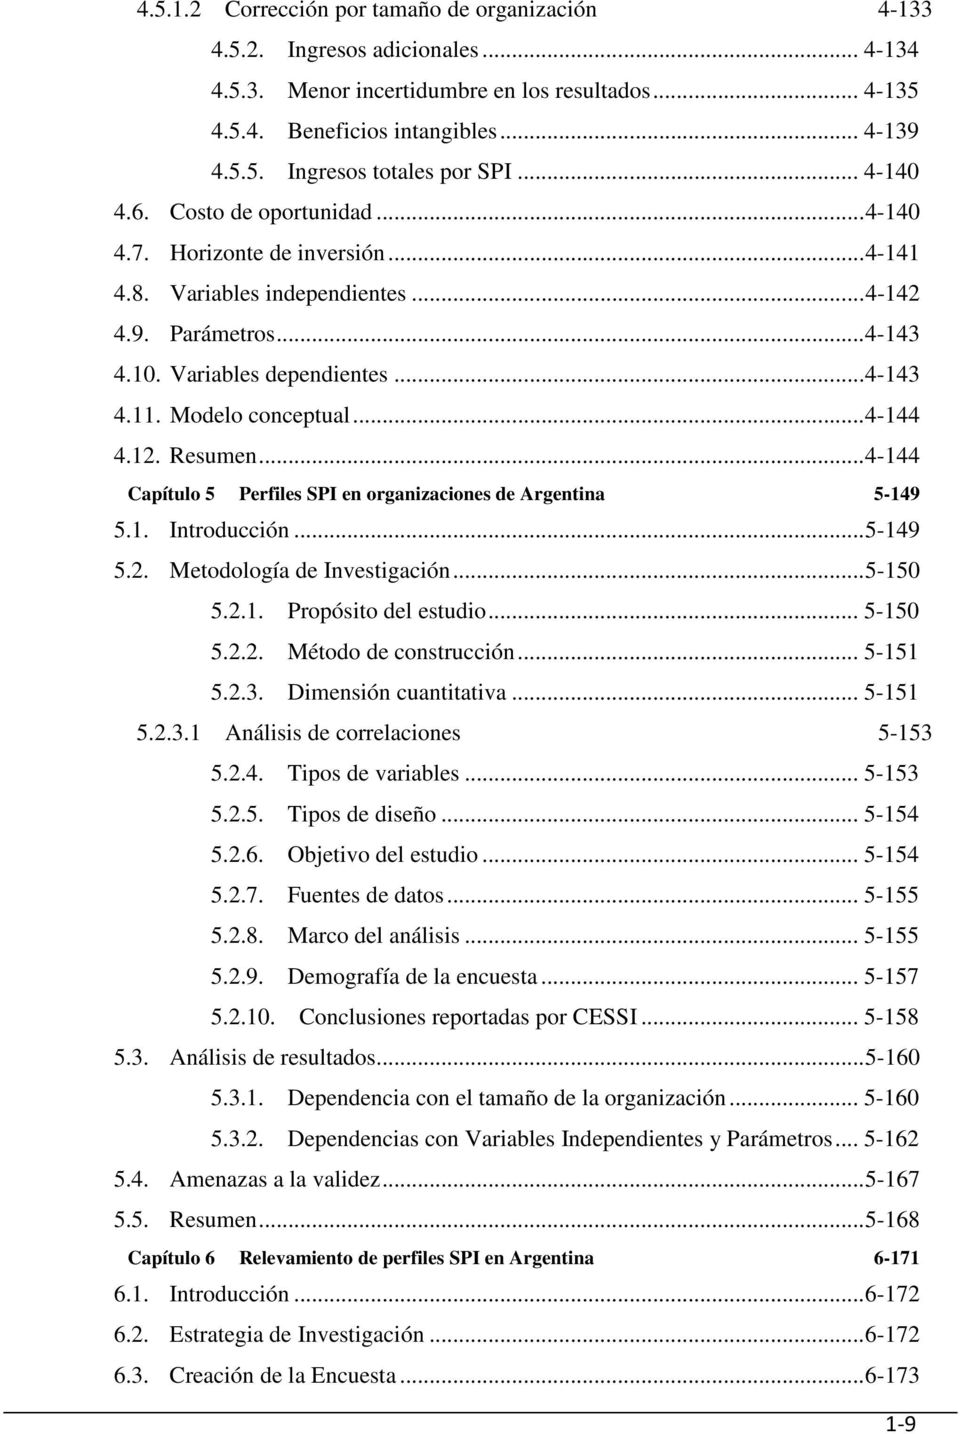 Modelo conceptual...4-144 4.12. Resumen...4-144 Capítulo 5 Perfiles SPI en organizaciones de Argentina 5-149 5.1. Introducción...5-149 5.2. Metodología de Investigación...5-150 5.2.1. Propósito del estudio.